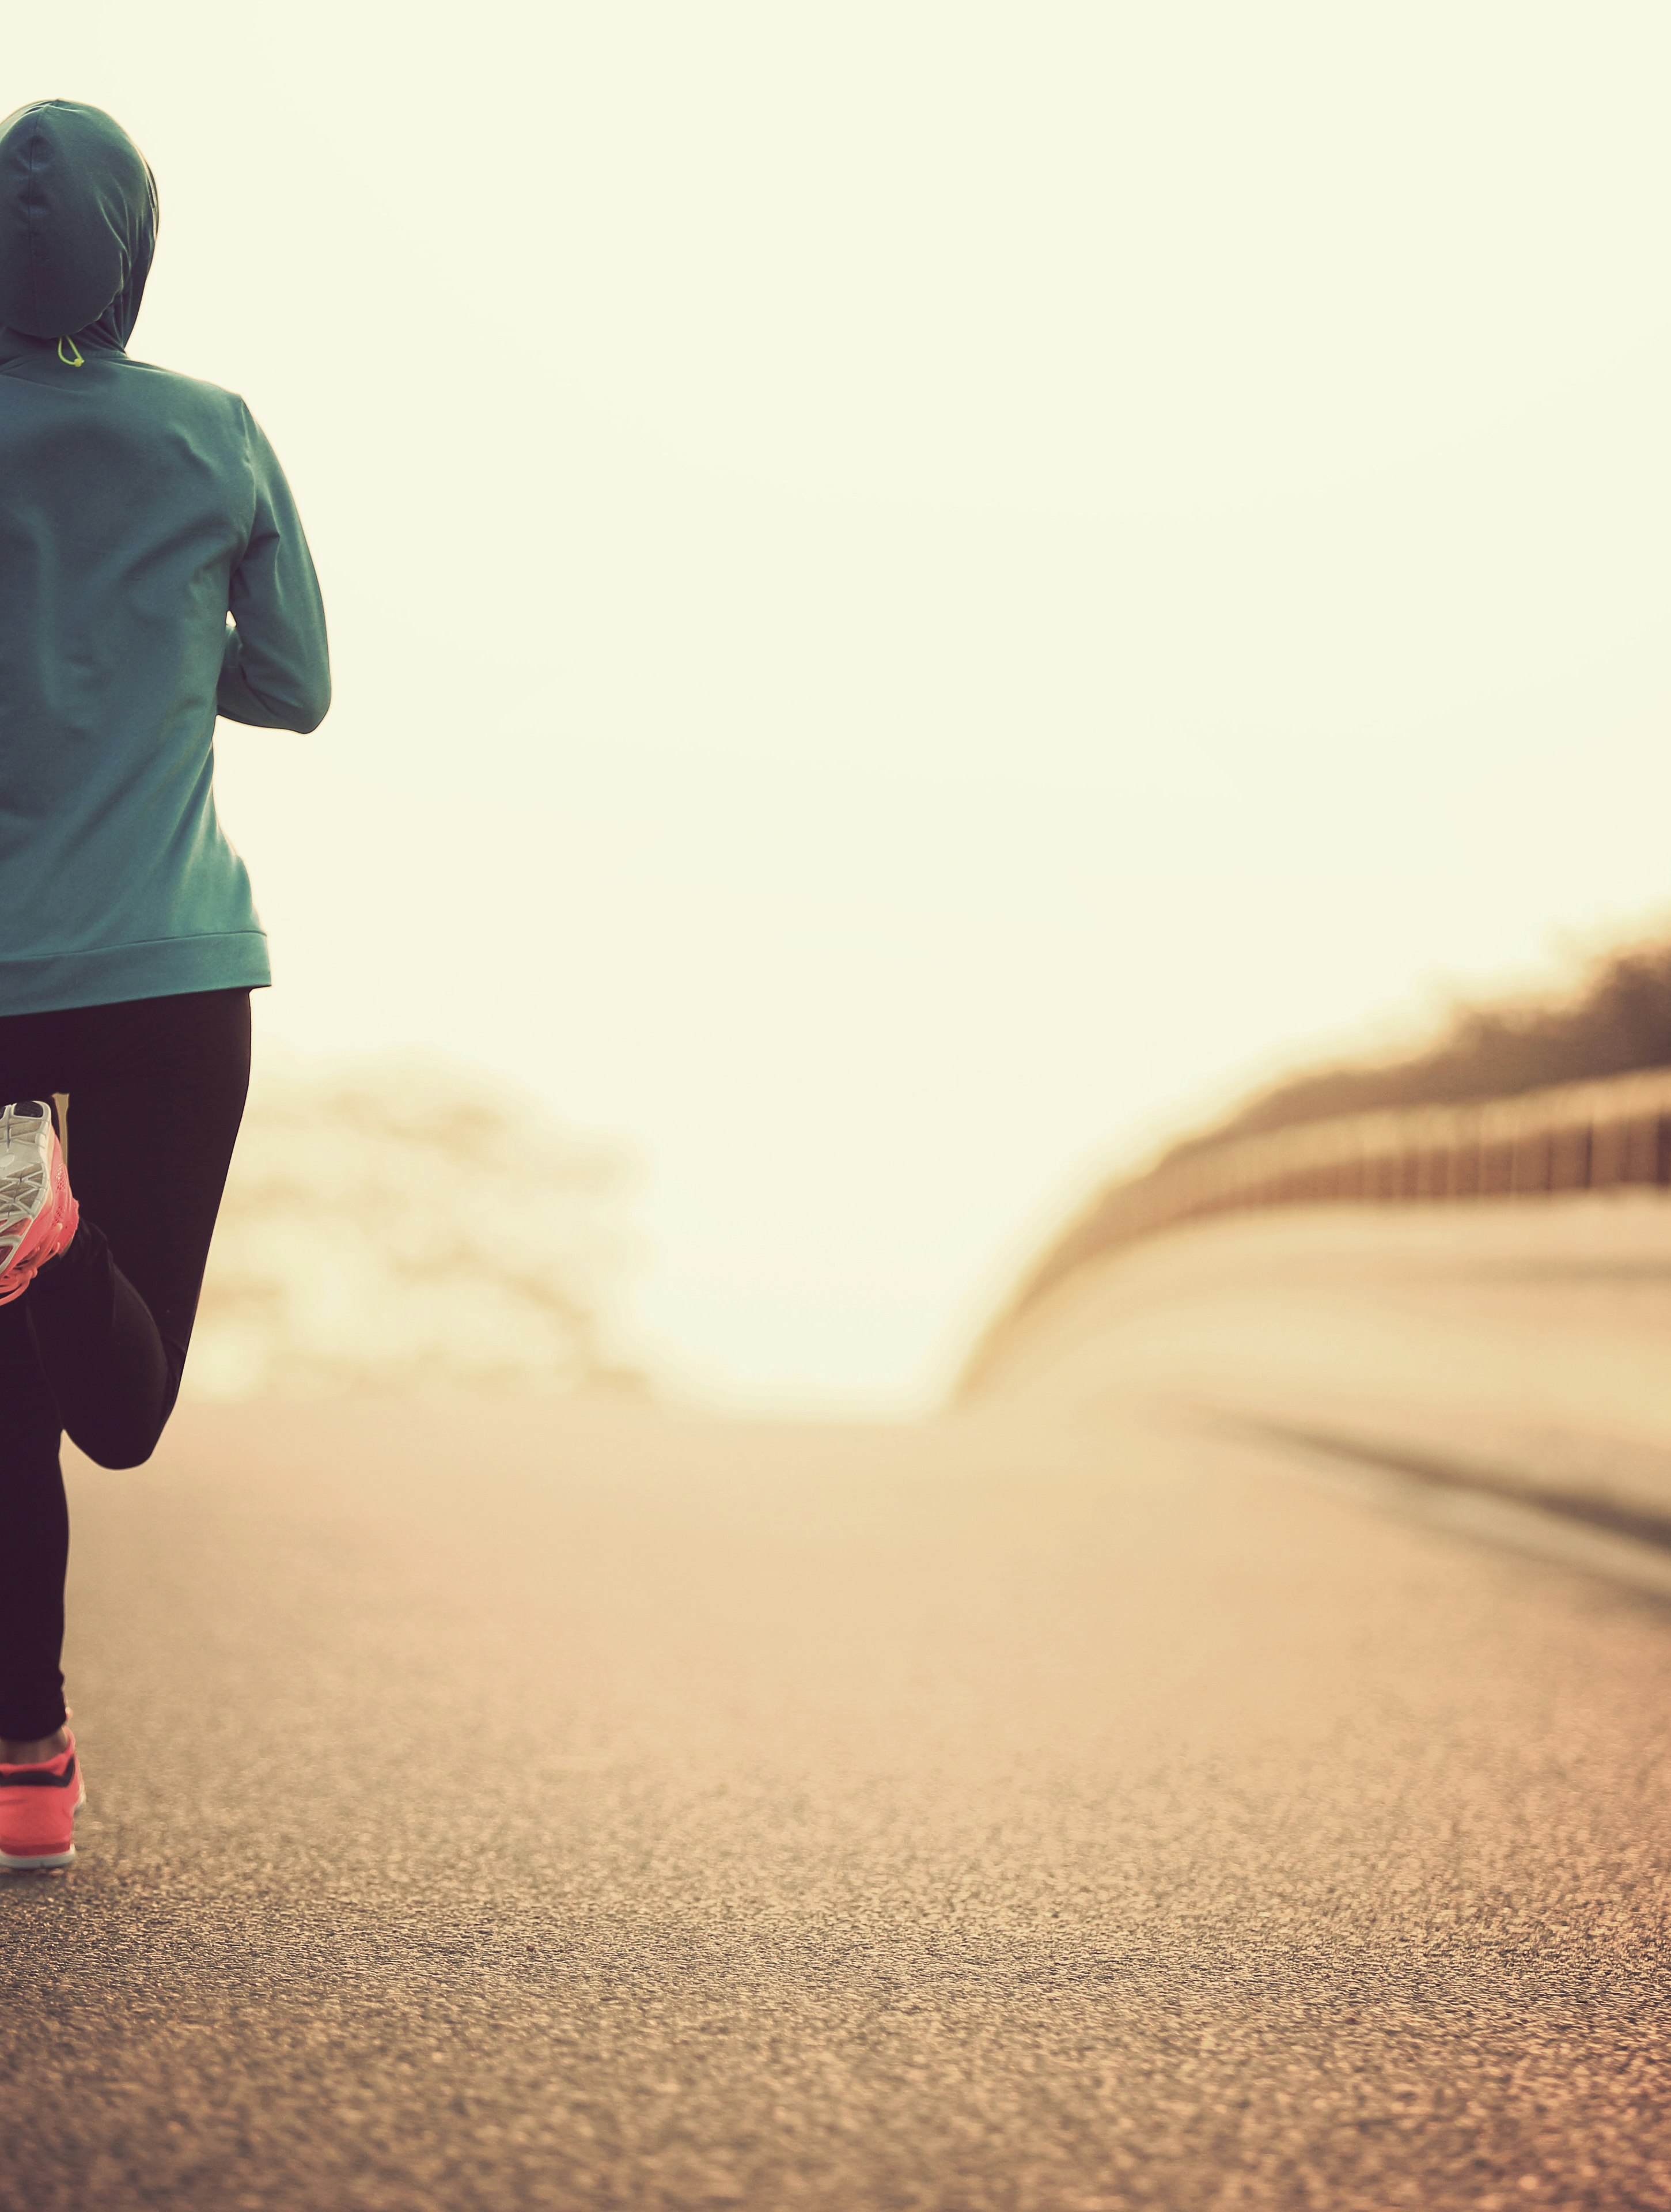 Kalorieforbrænding: Hvor meget forbrænder man ved at løbe? 